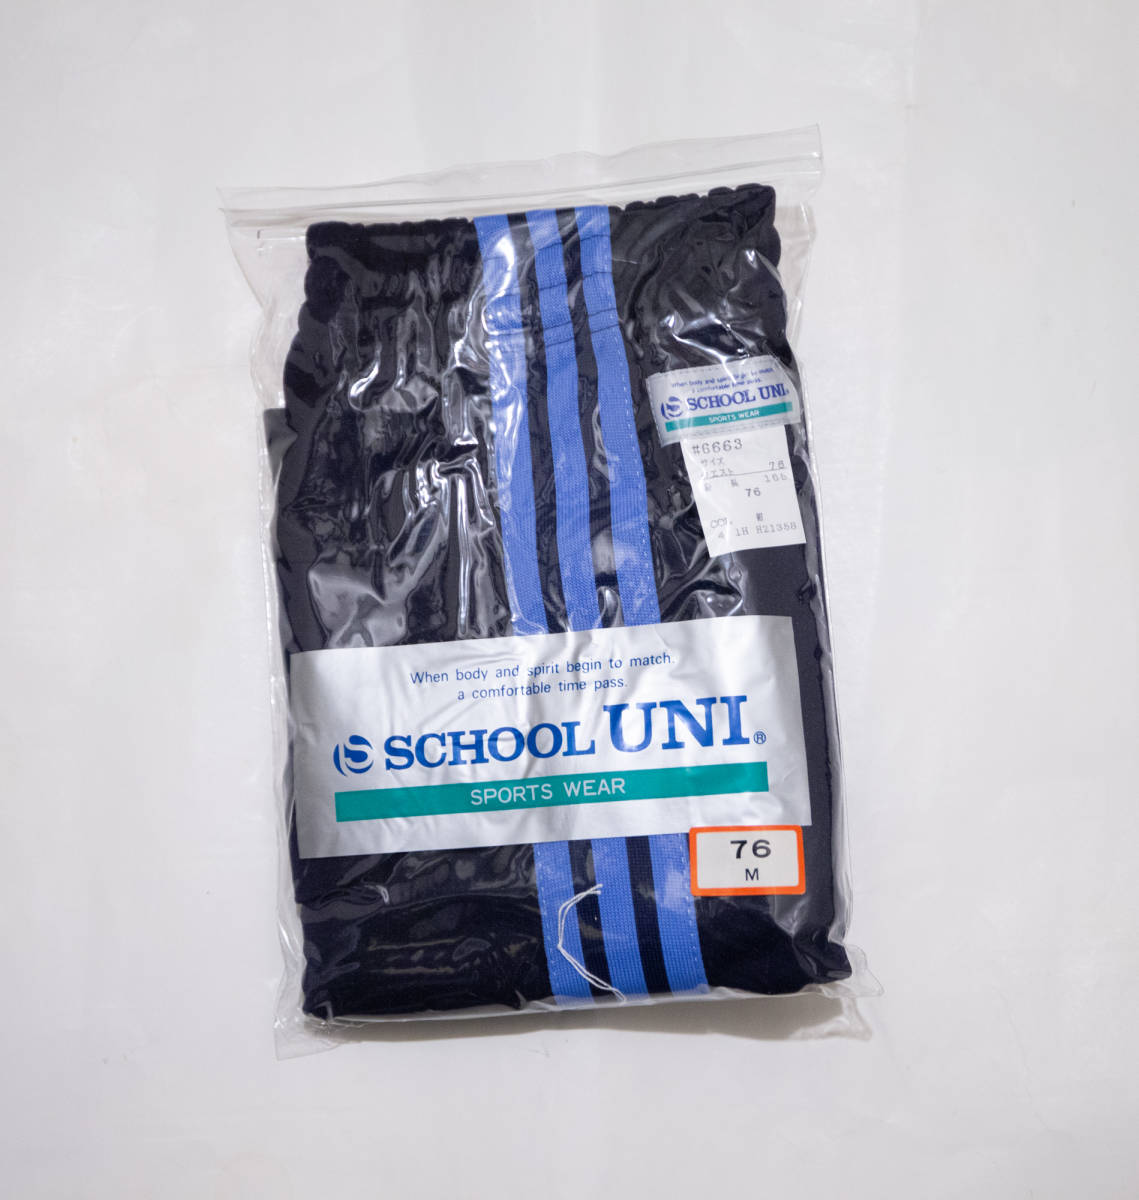  спортивная форма * school Uni джерси короткий хлеб темно-синий × бледно-голубой 3шт.@ линия M новый товар не использовался быстрое решение!